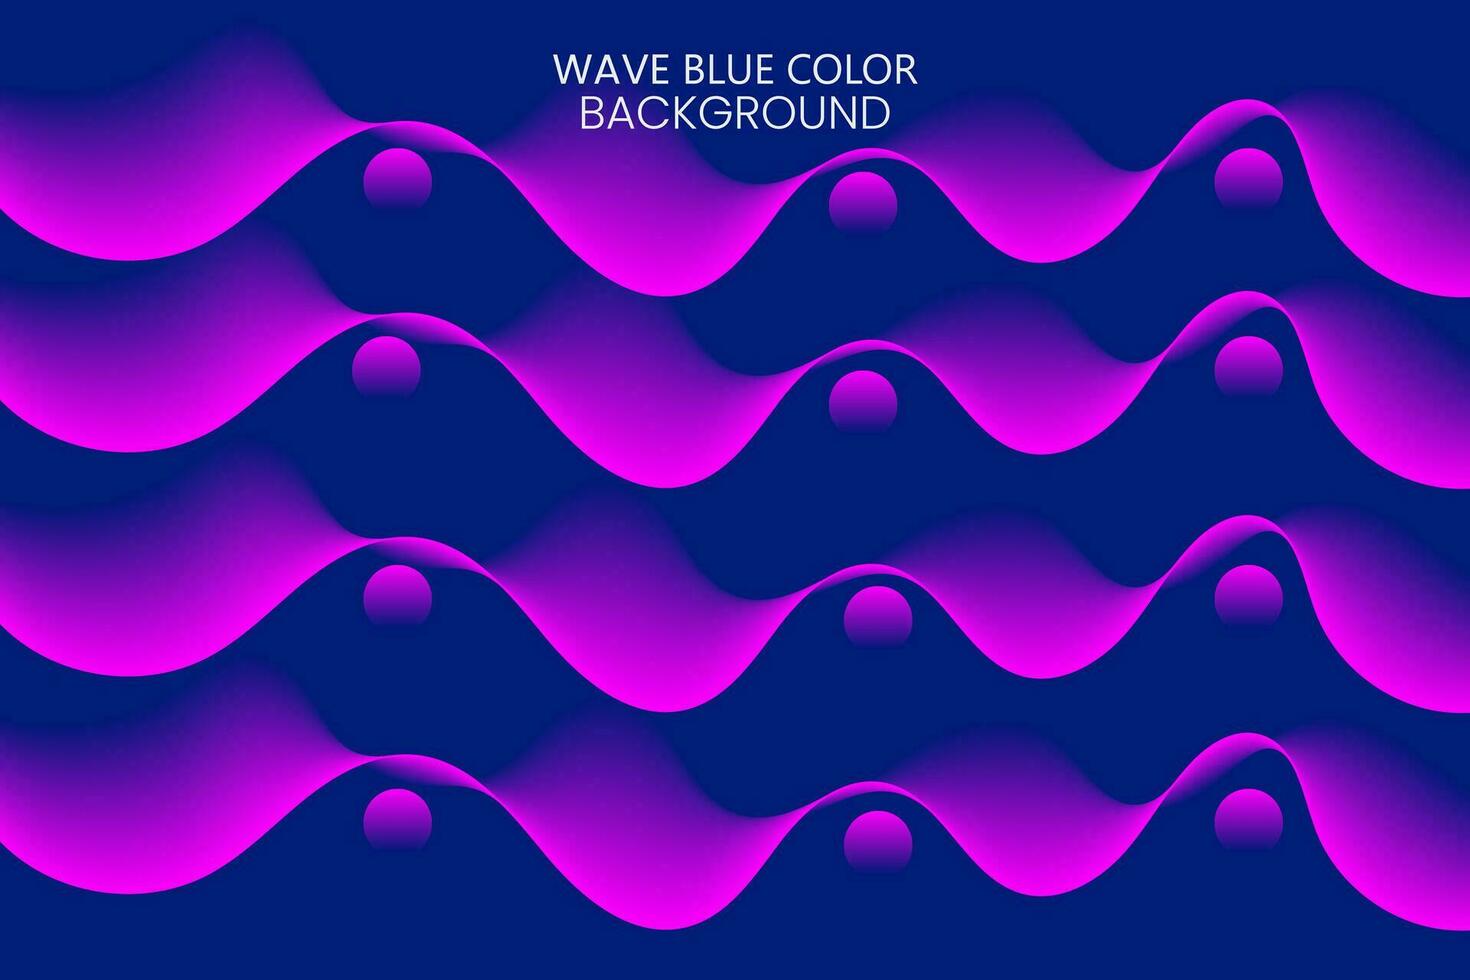 Vektor 3d Kurve gestalten Gradient Welle Blau Farbe Mischung Werkzeug abstrakt Hintergrund